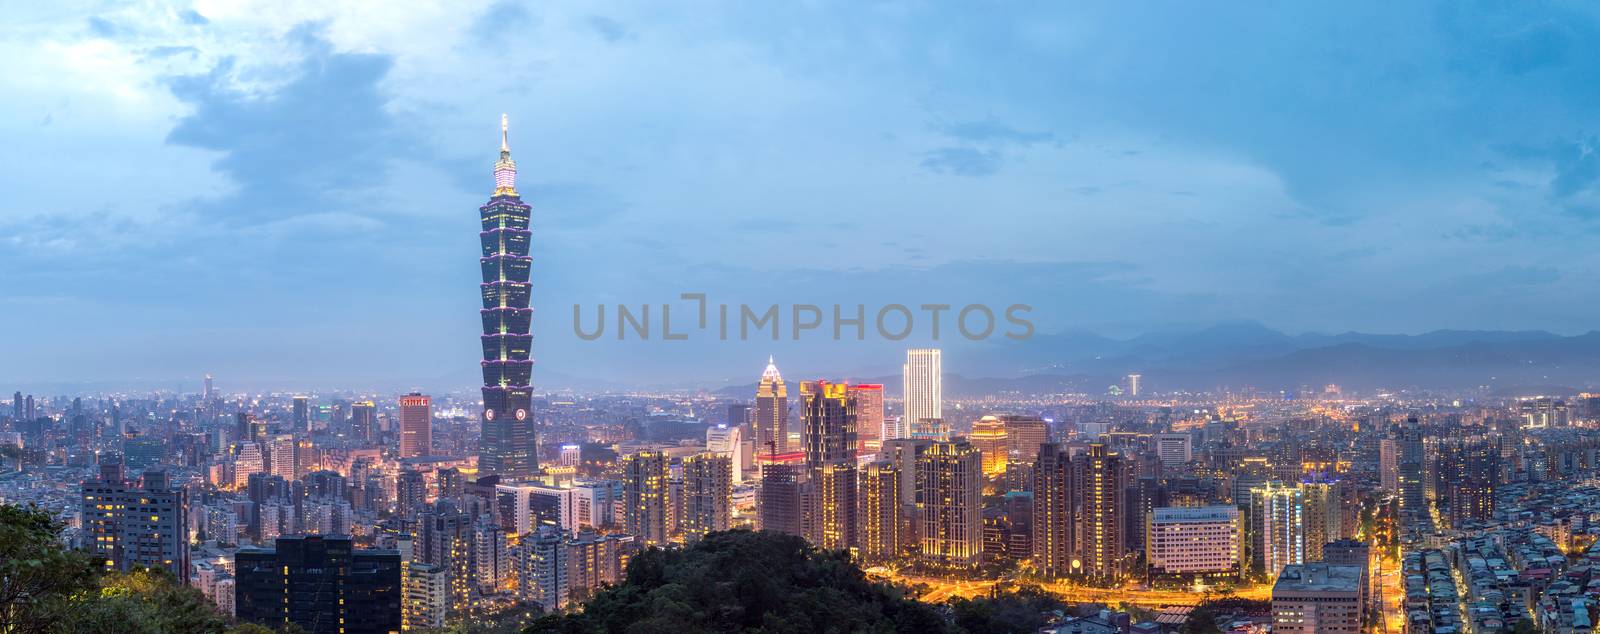 Taipei, Taiwan skylines by vichie81